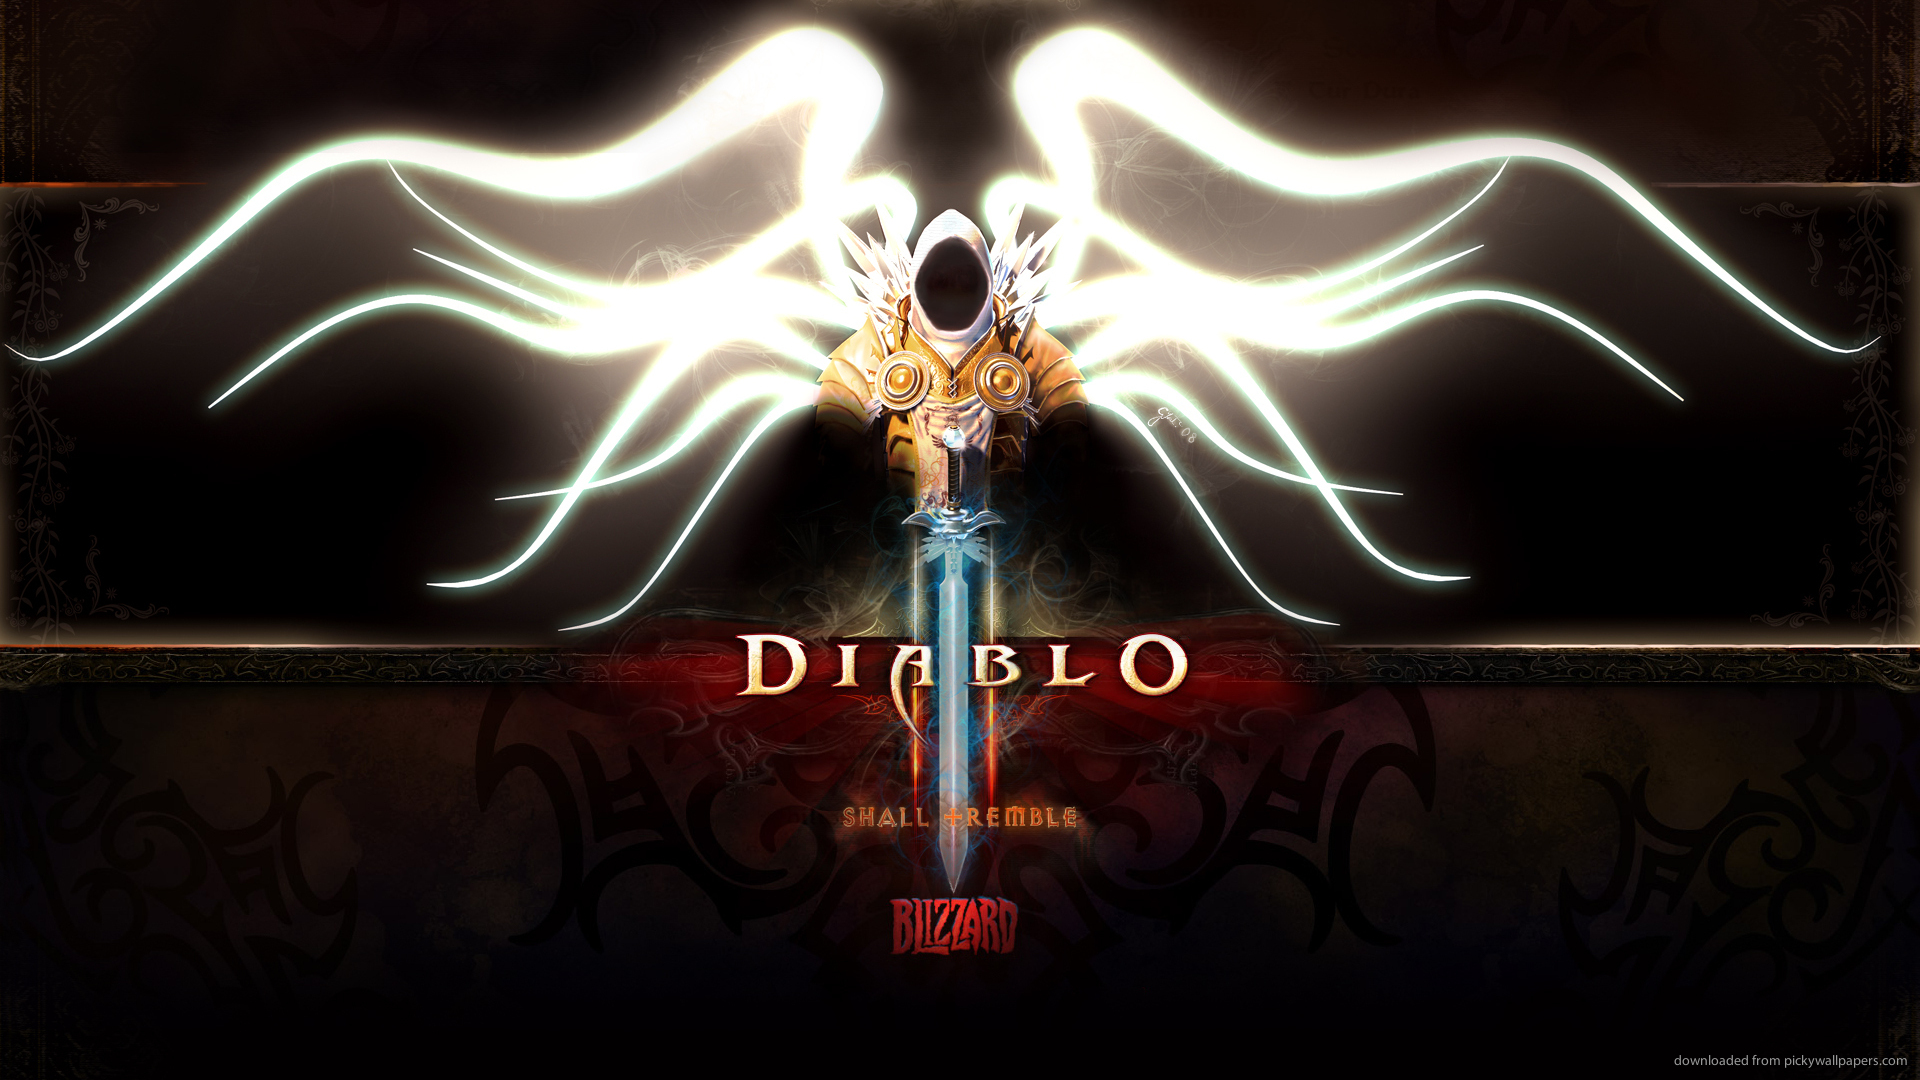 Diablo Tyrael Wallpaper for 1920 x 1080 HDTV 1080p   FROBLOG